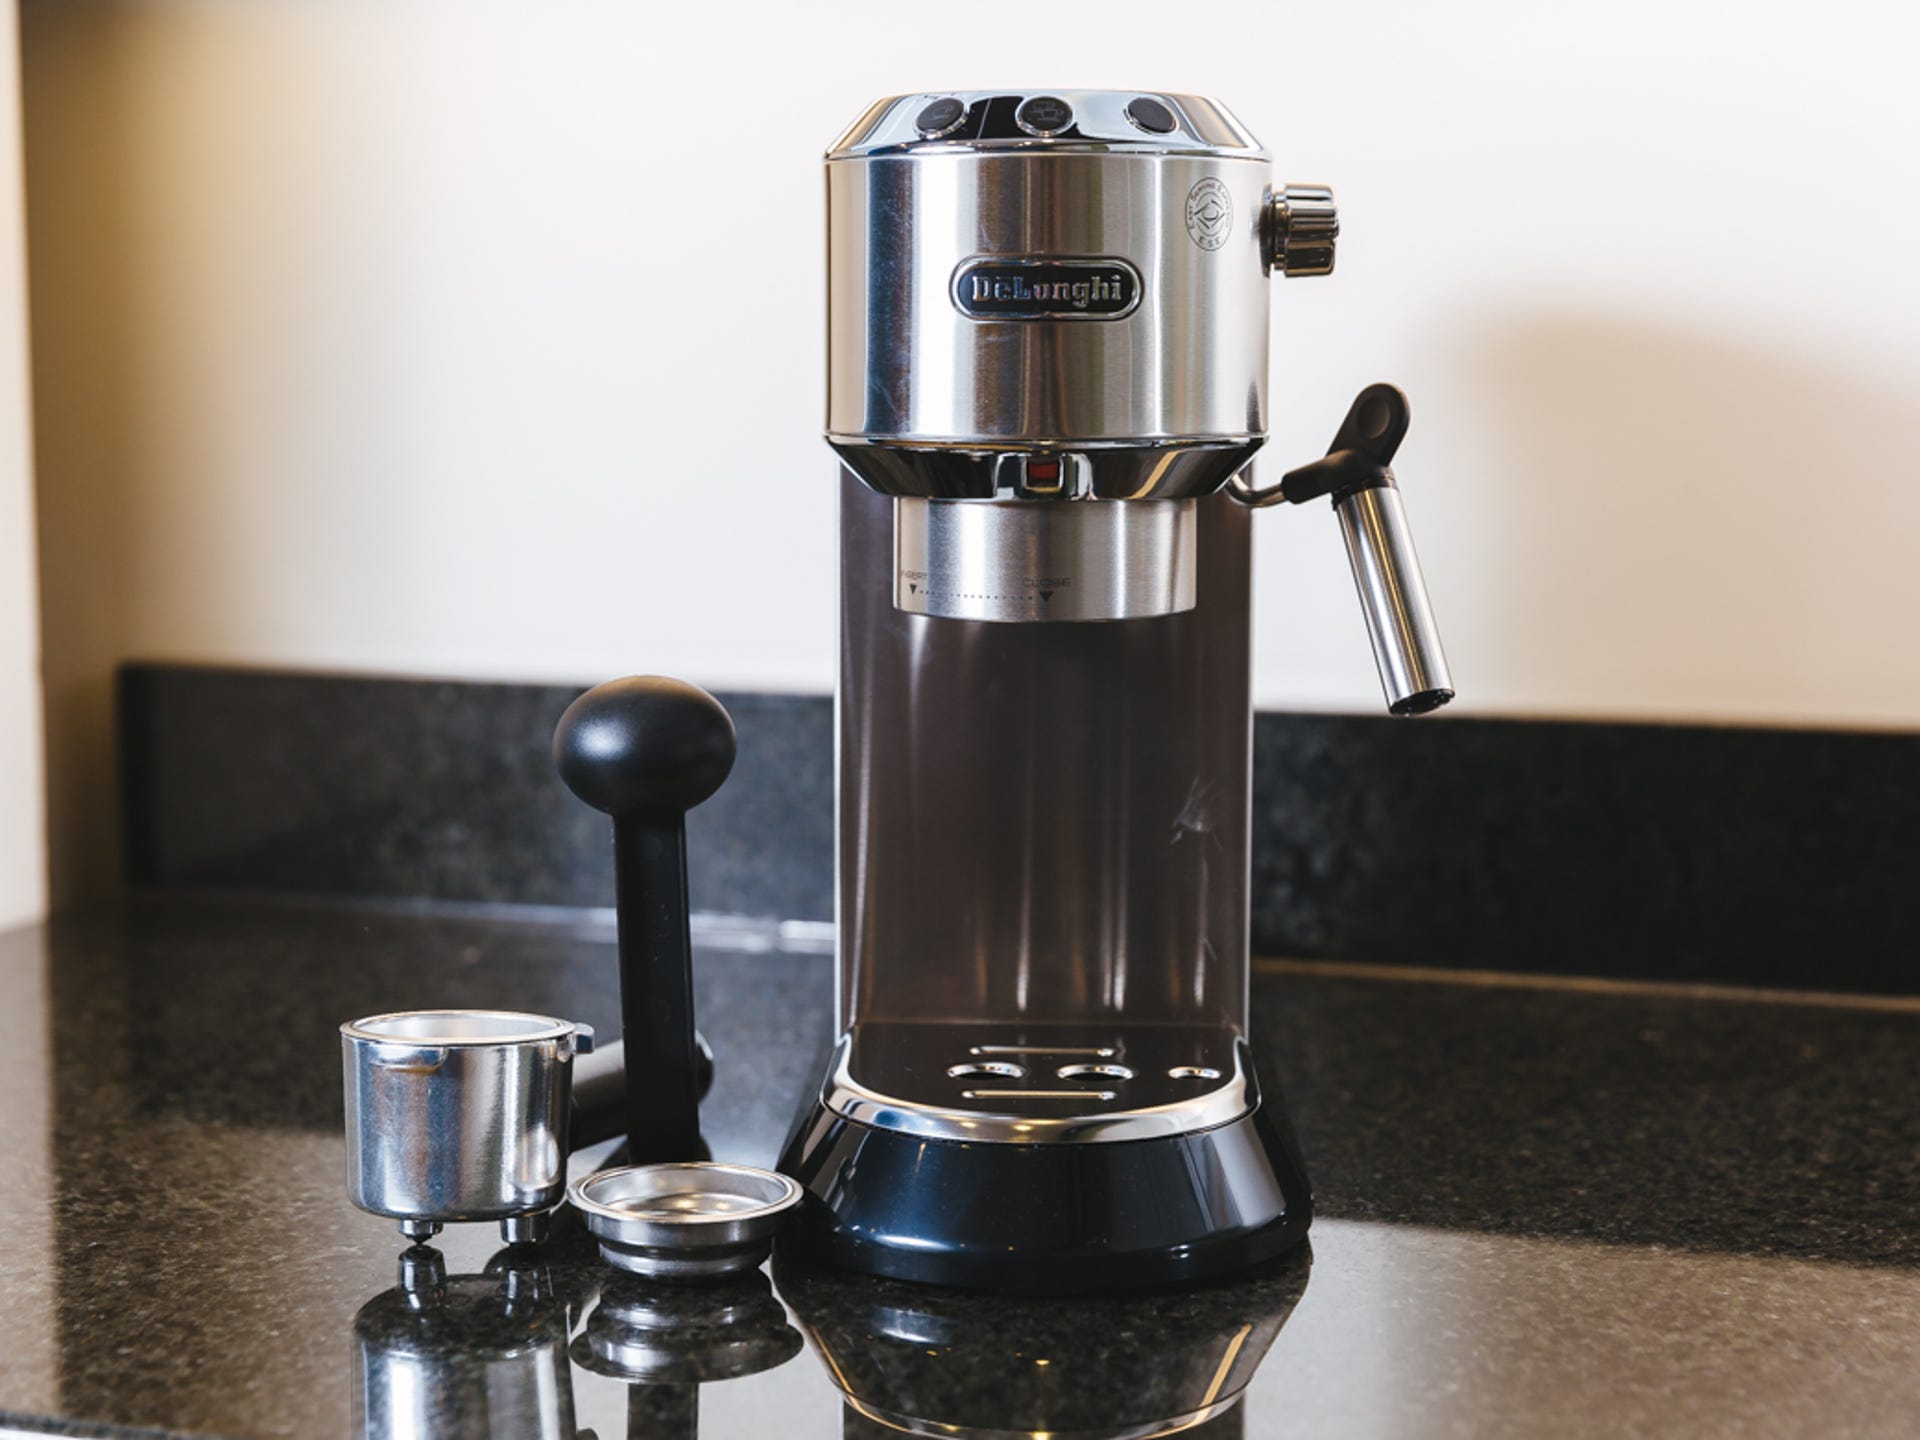 De'Longhi Dedica Pump Espresso review: Better espresso brewing but